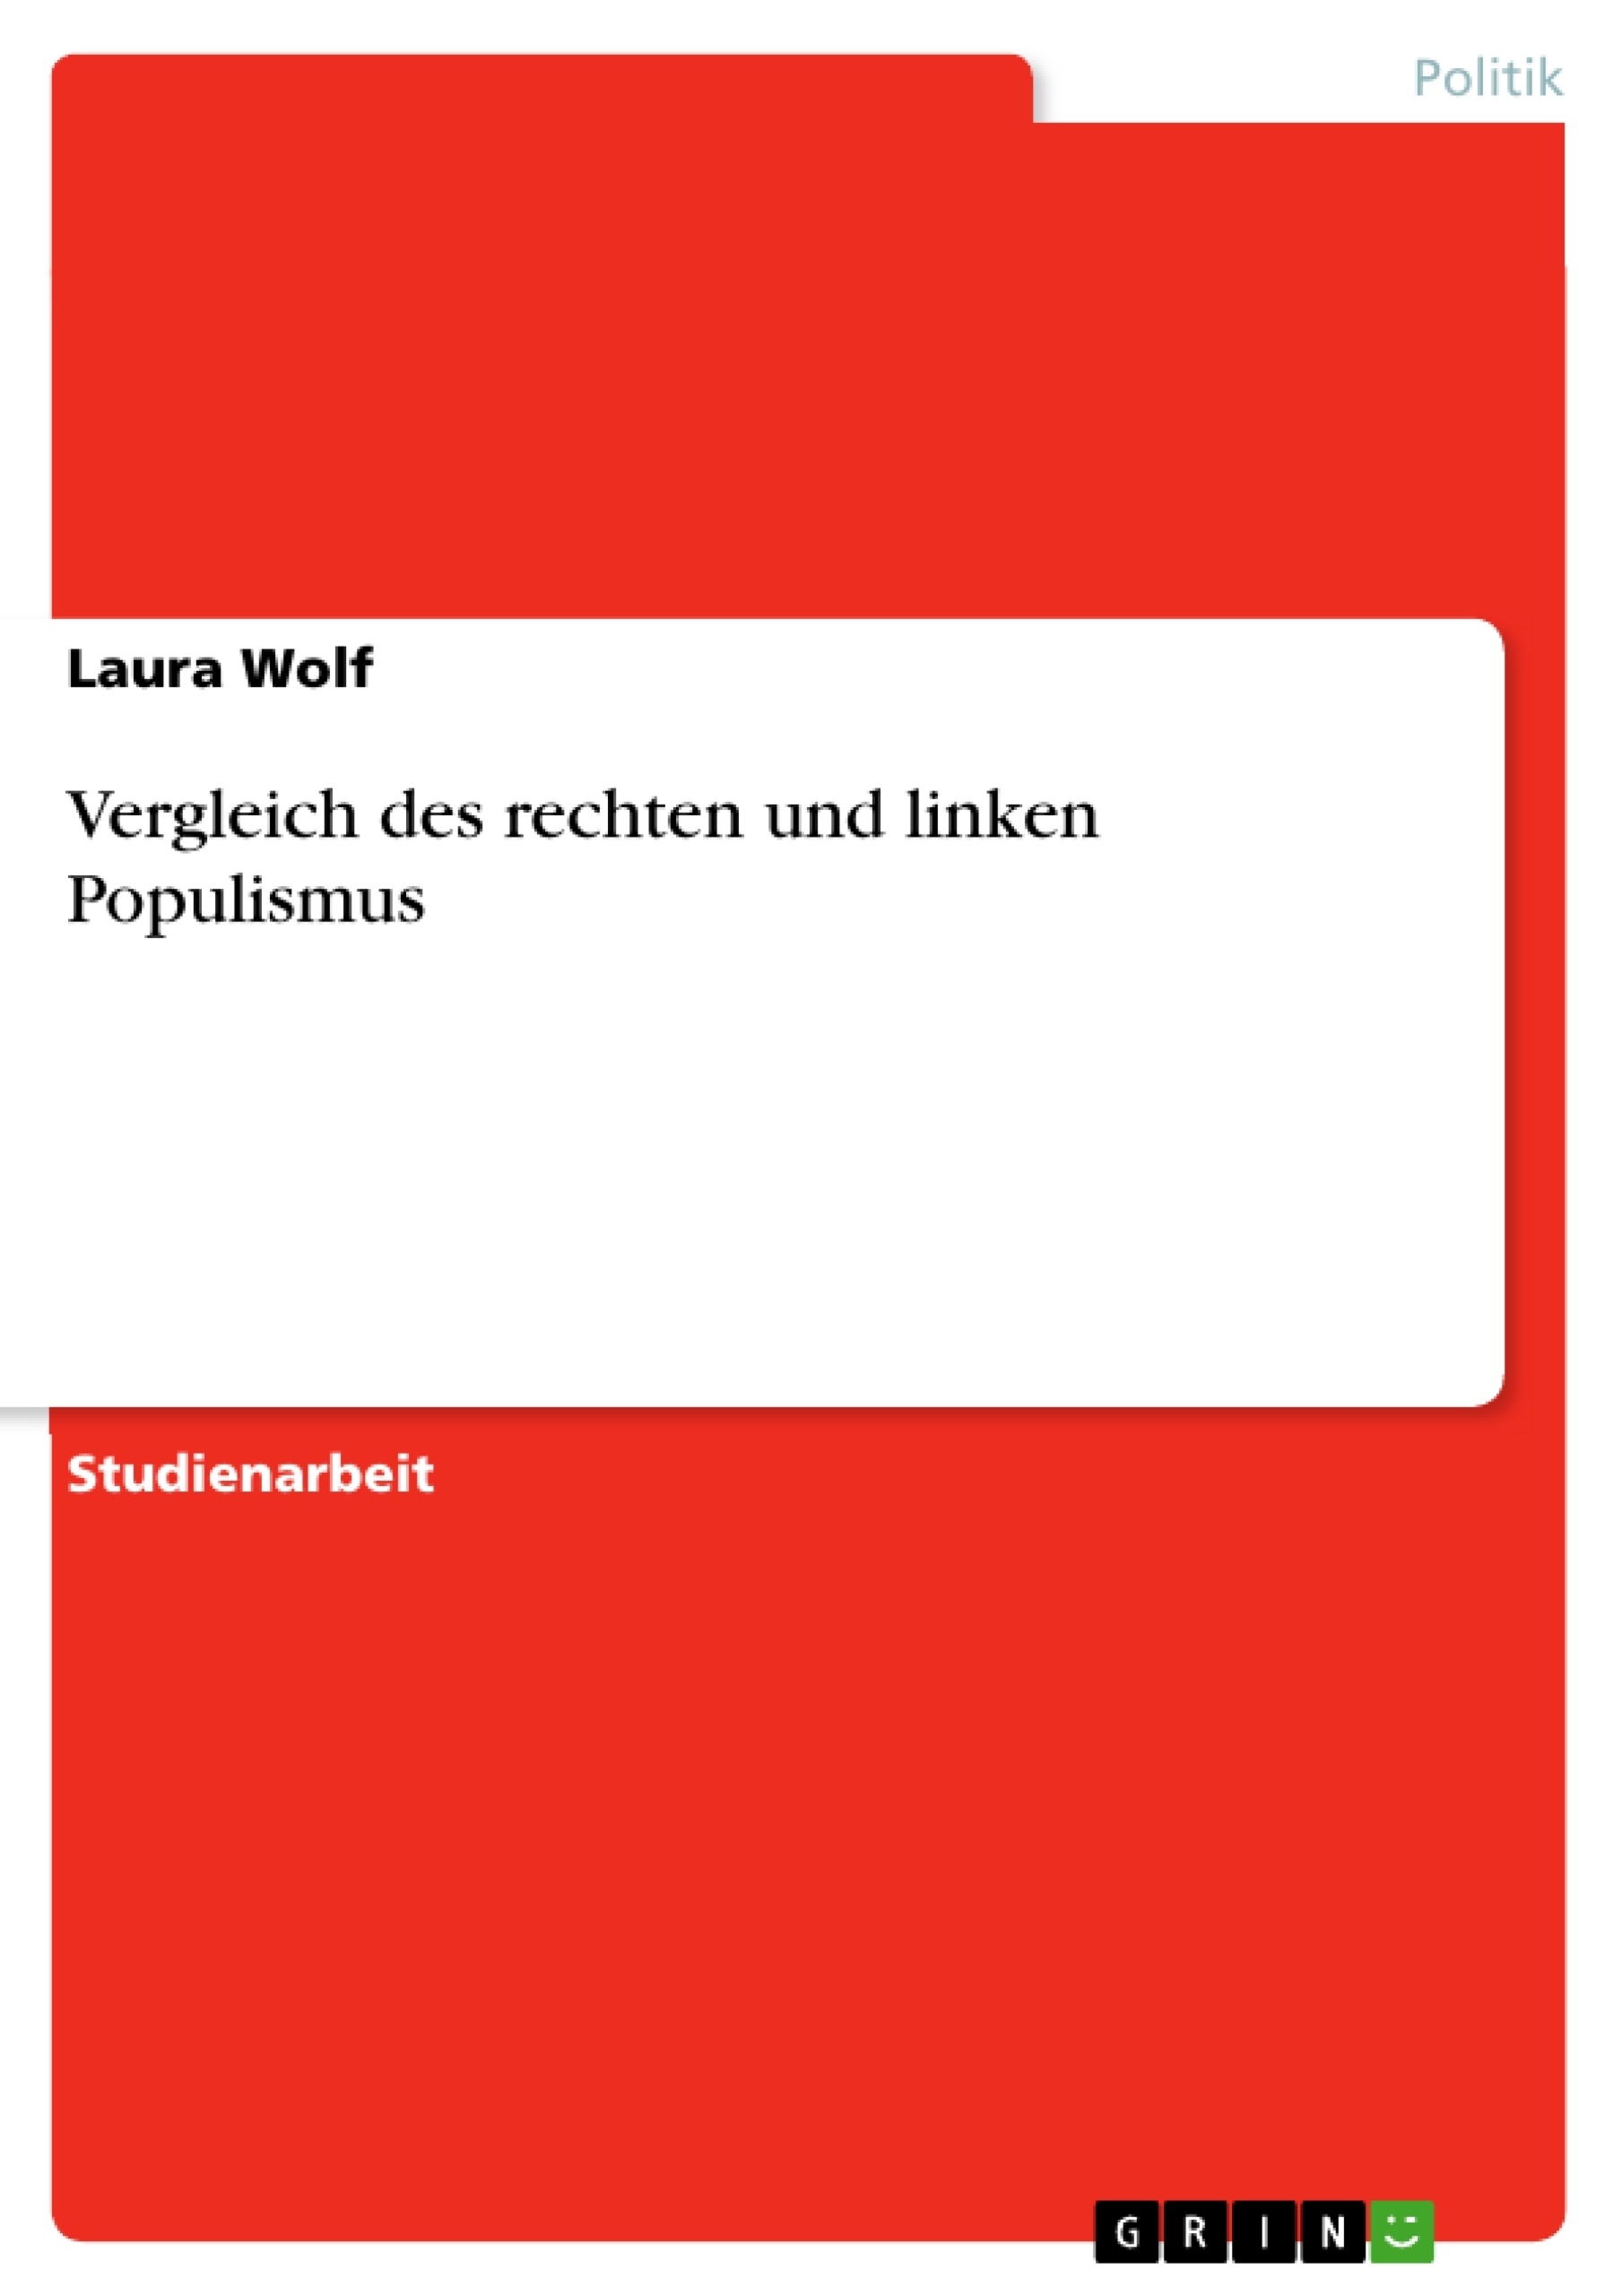 Title: Vergleich des rechten und linken Populismus